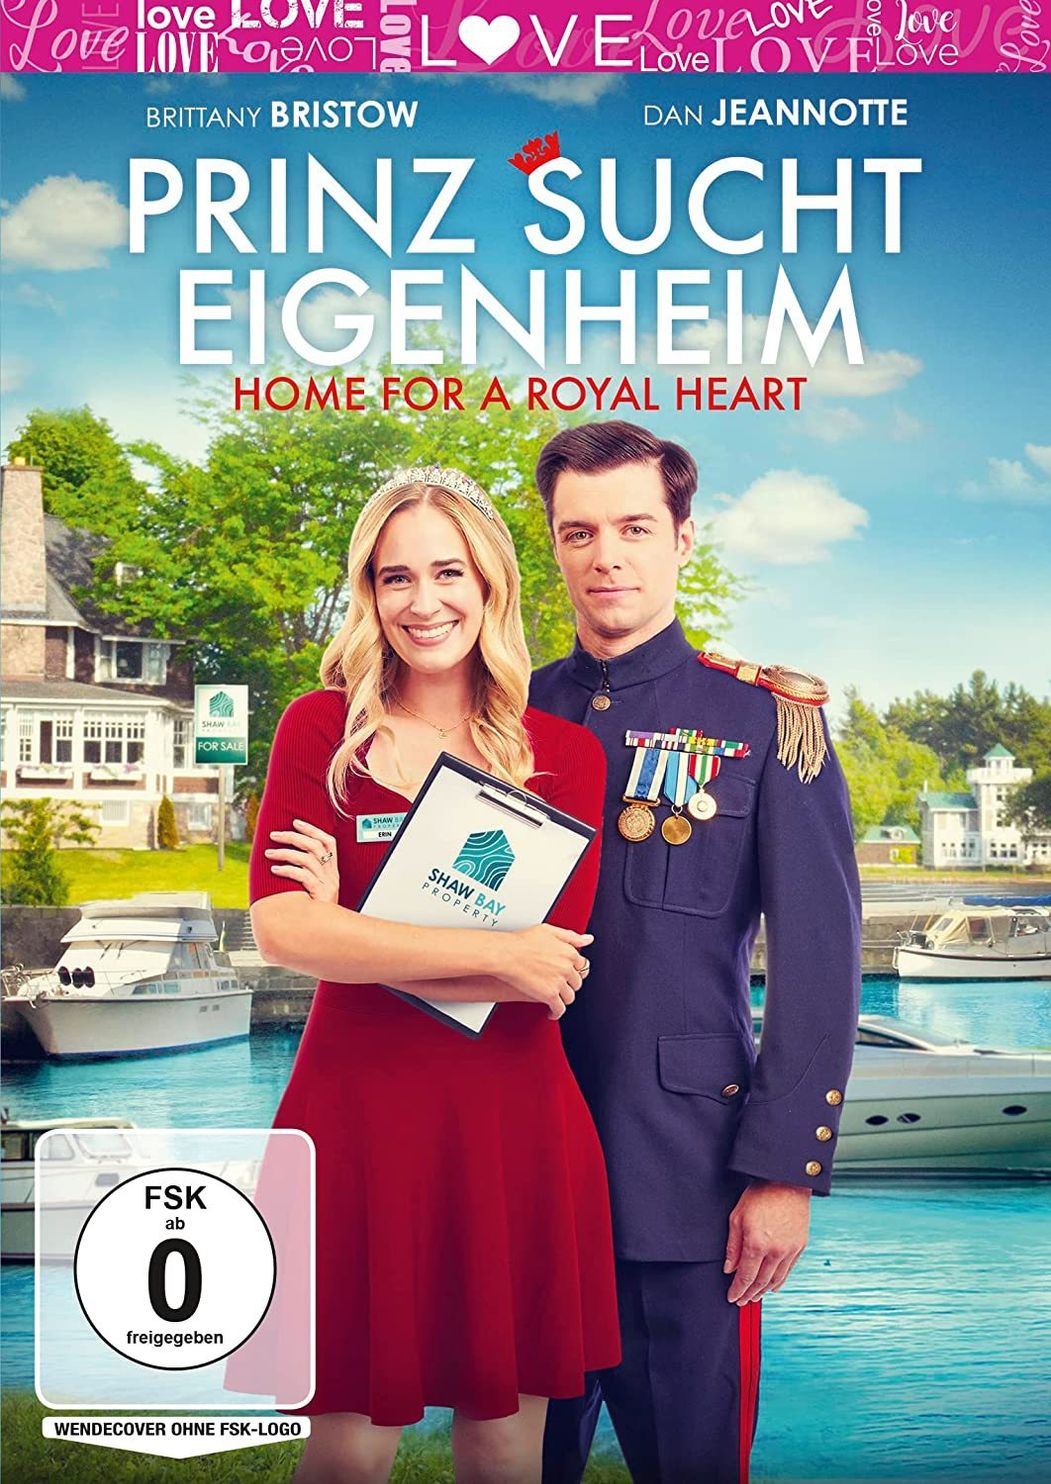 Prinz sucht Eigenheim - Home for a Royal Heart DVD | Weltbild.de